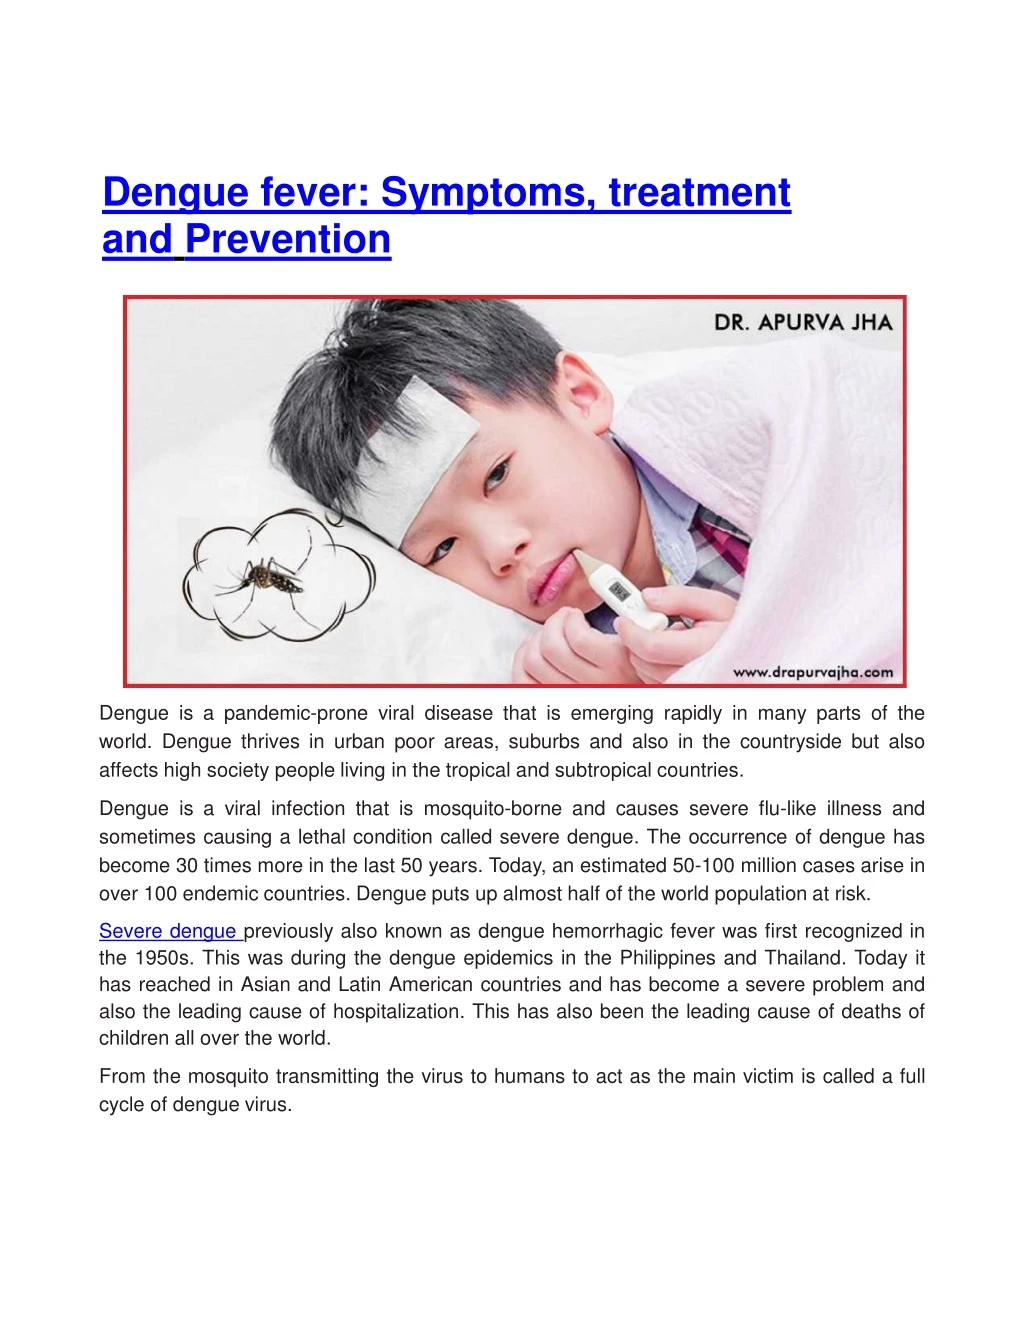 dengue fever symptoms treatment and prevention